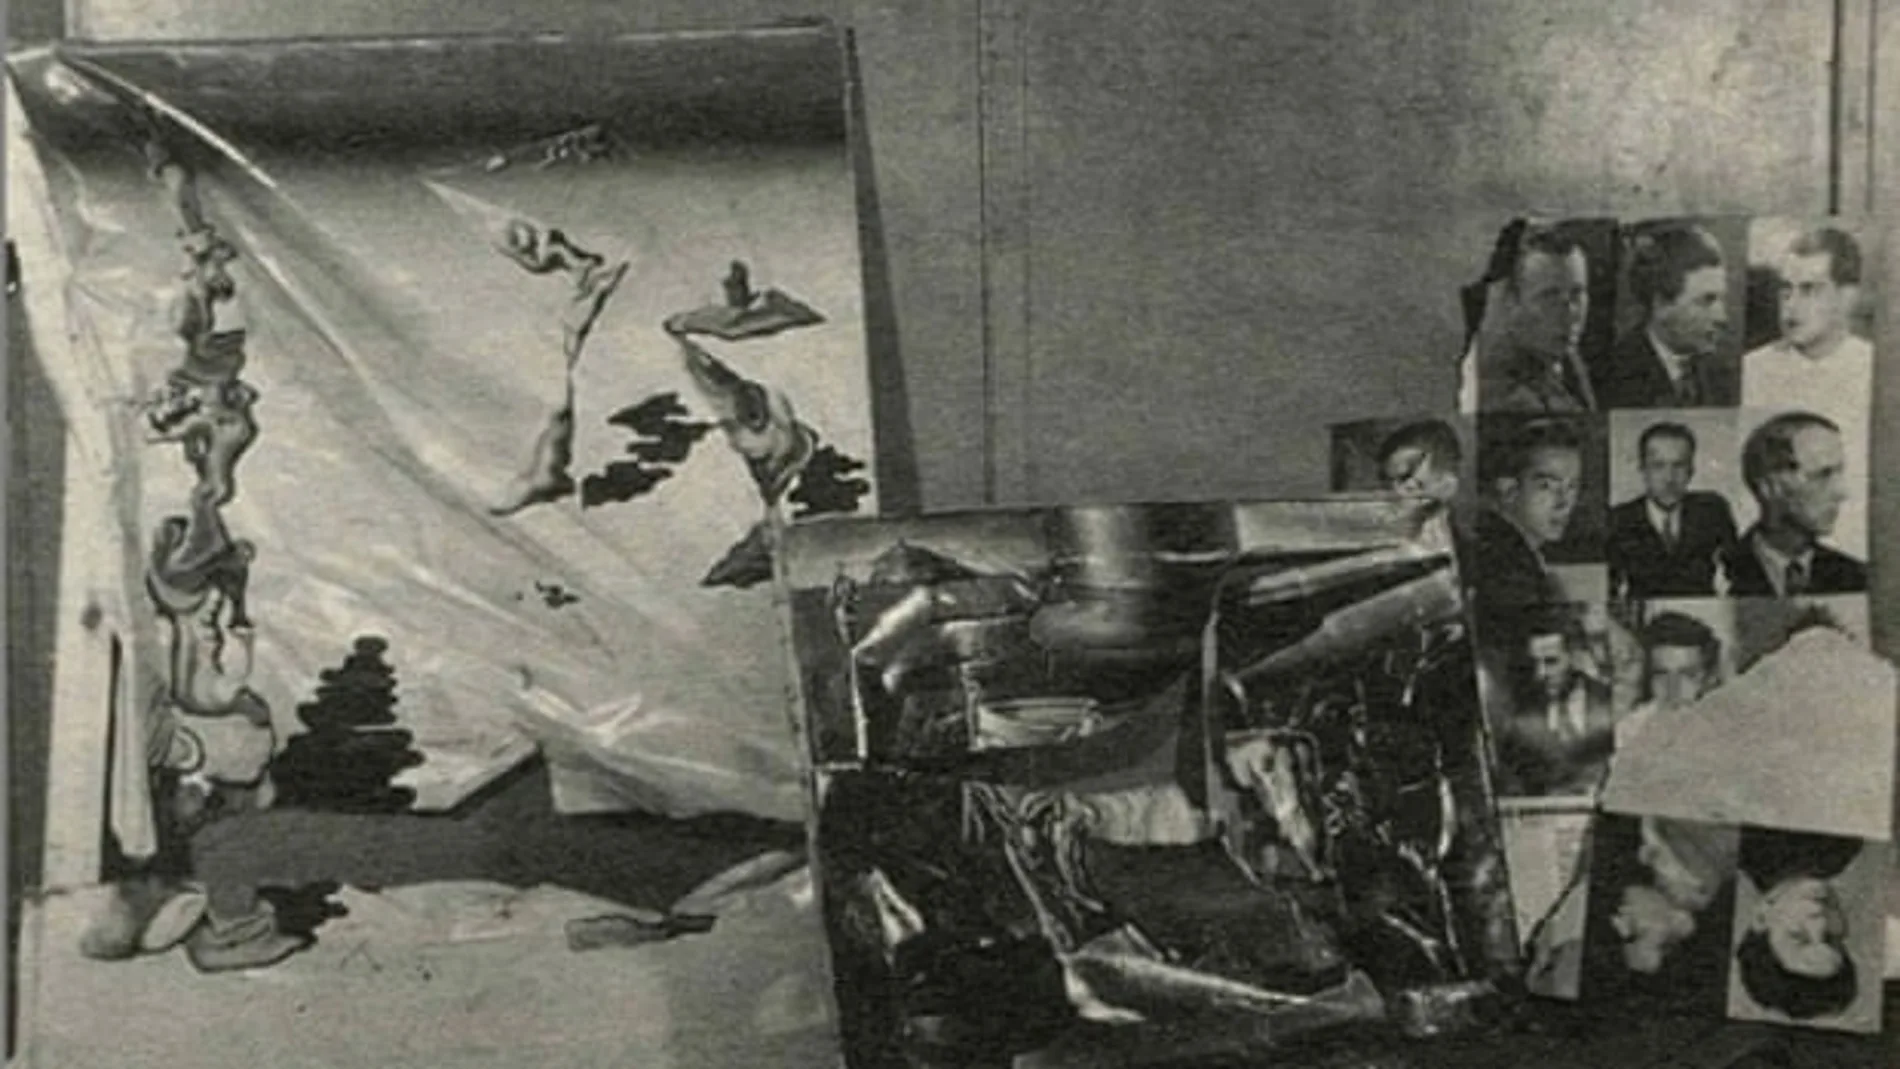 "Fraude en el jardín", de Tanguy, a la izquierda, fotografiado con otras obras destrozadas tras el ataque fascista